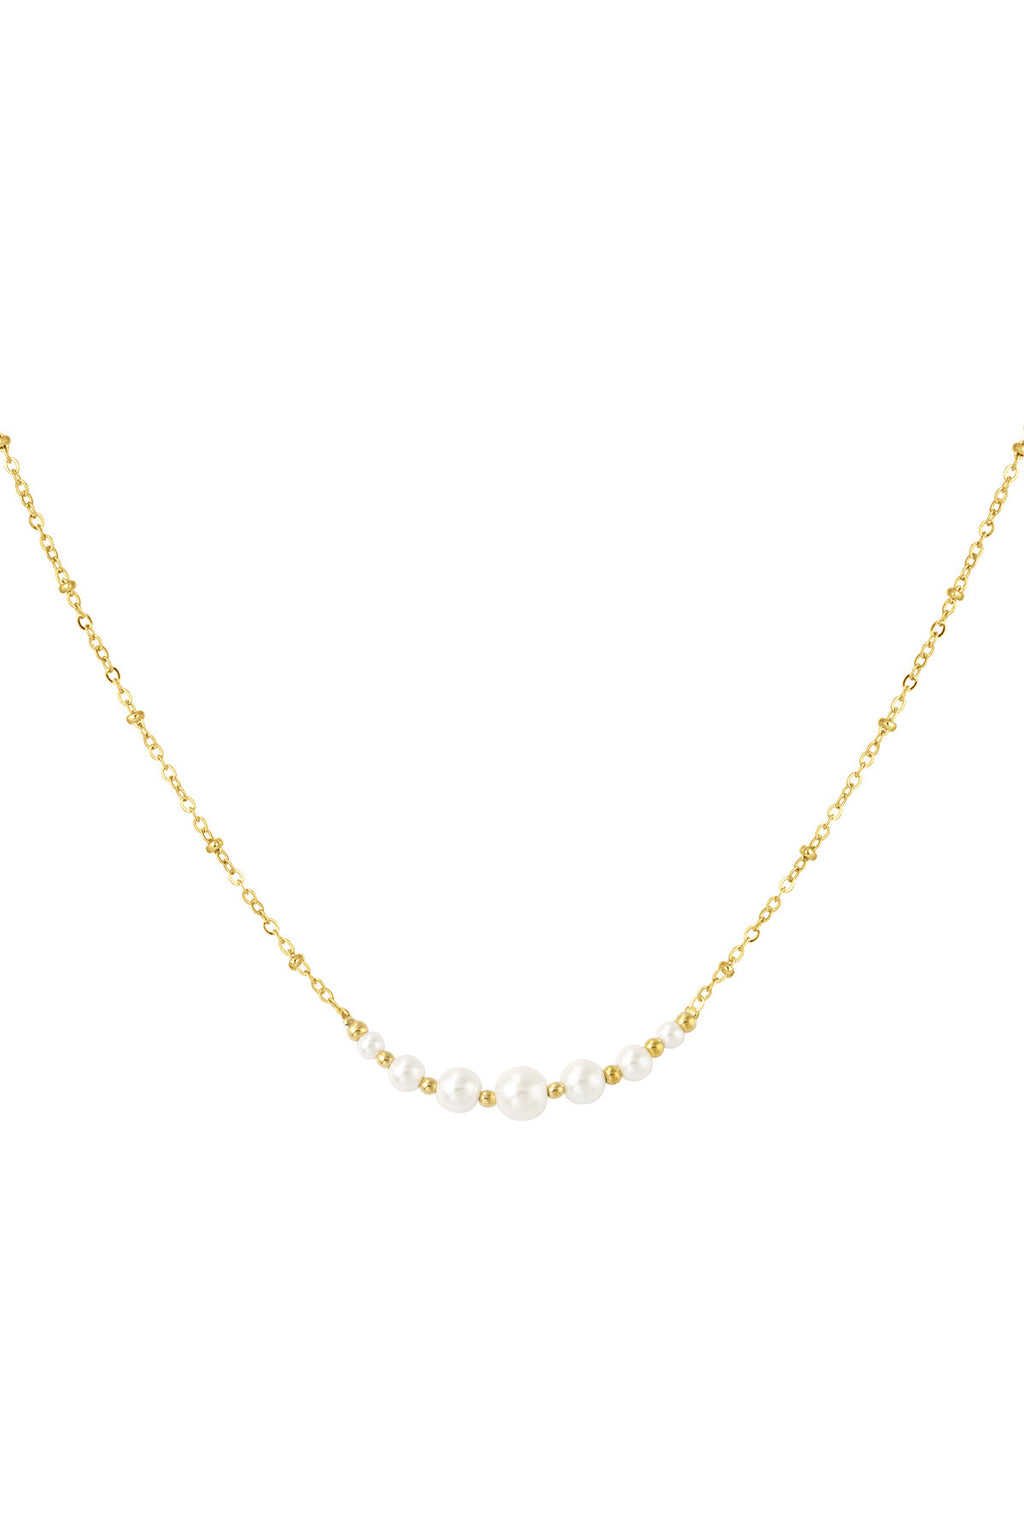 Prettiest pearl necklace